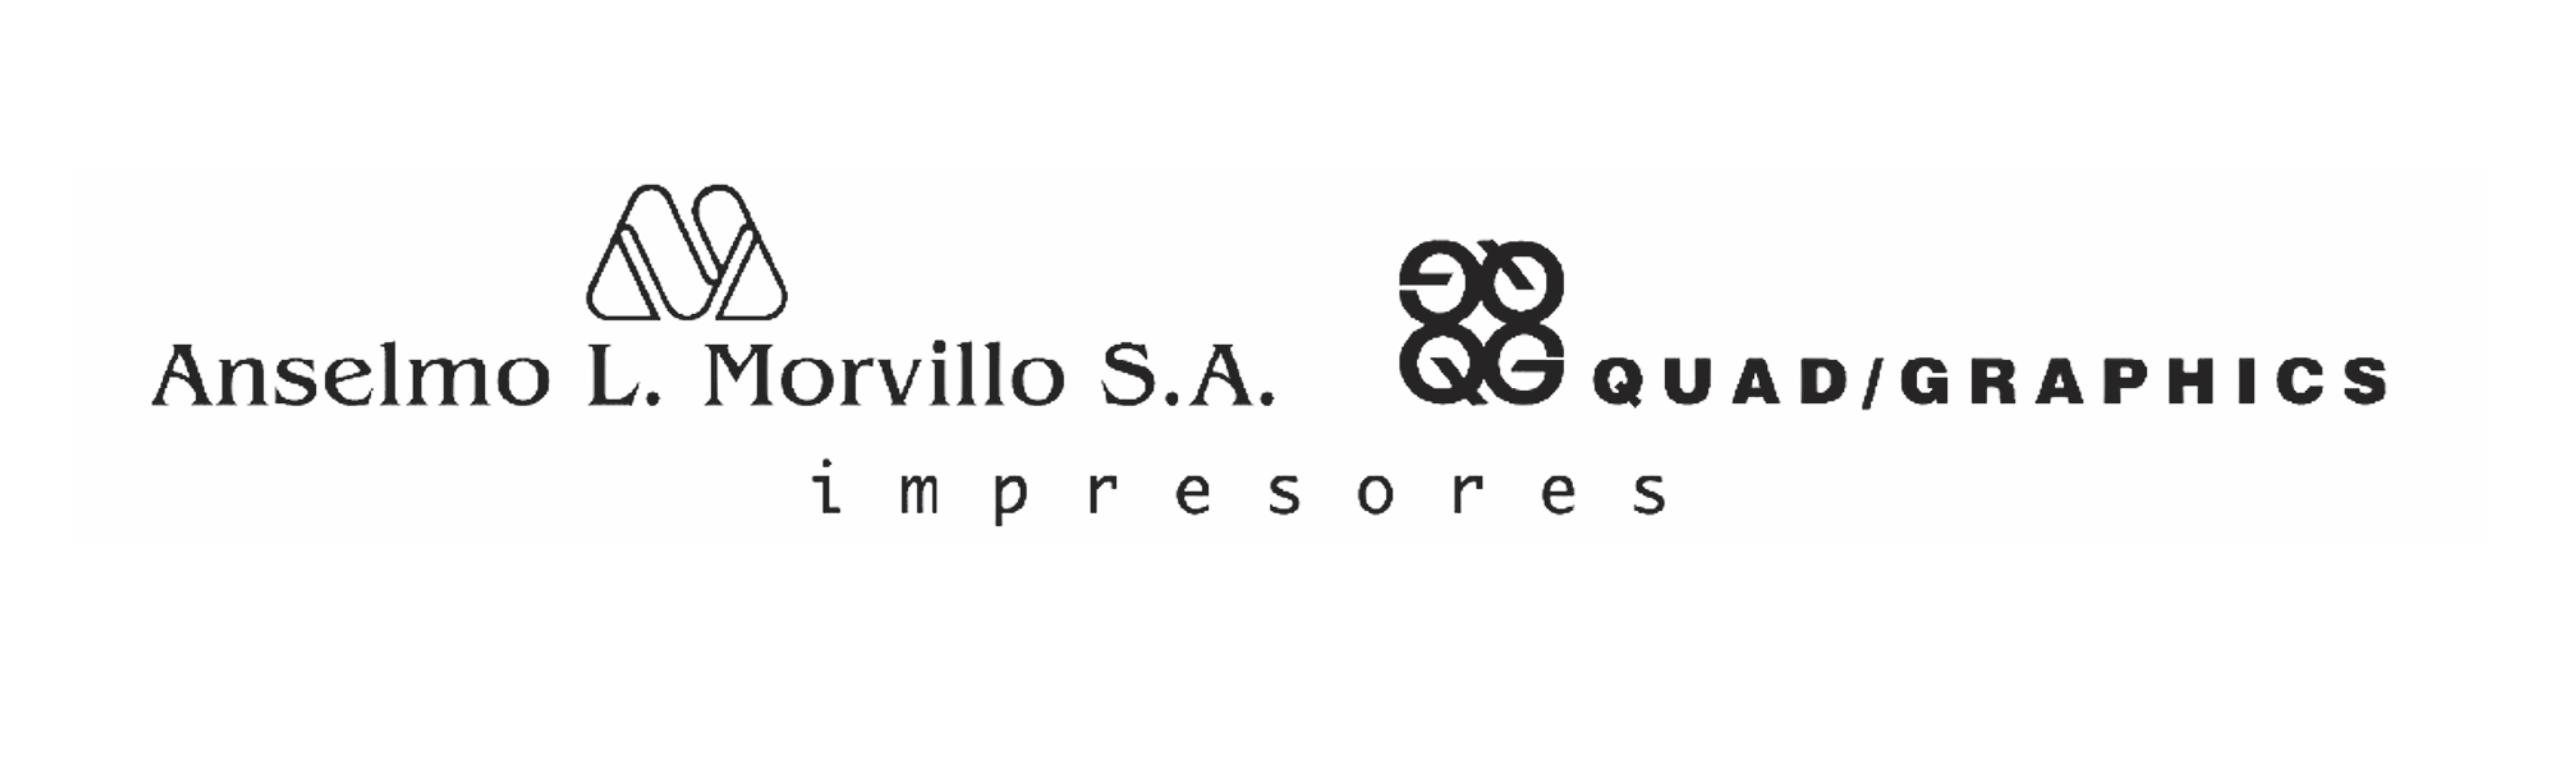 proyectoacuario.com.ar logo AM